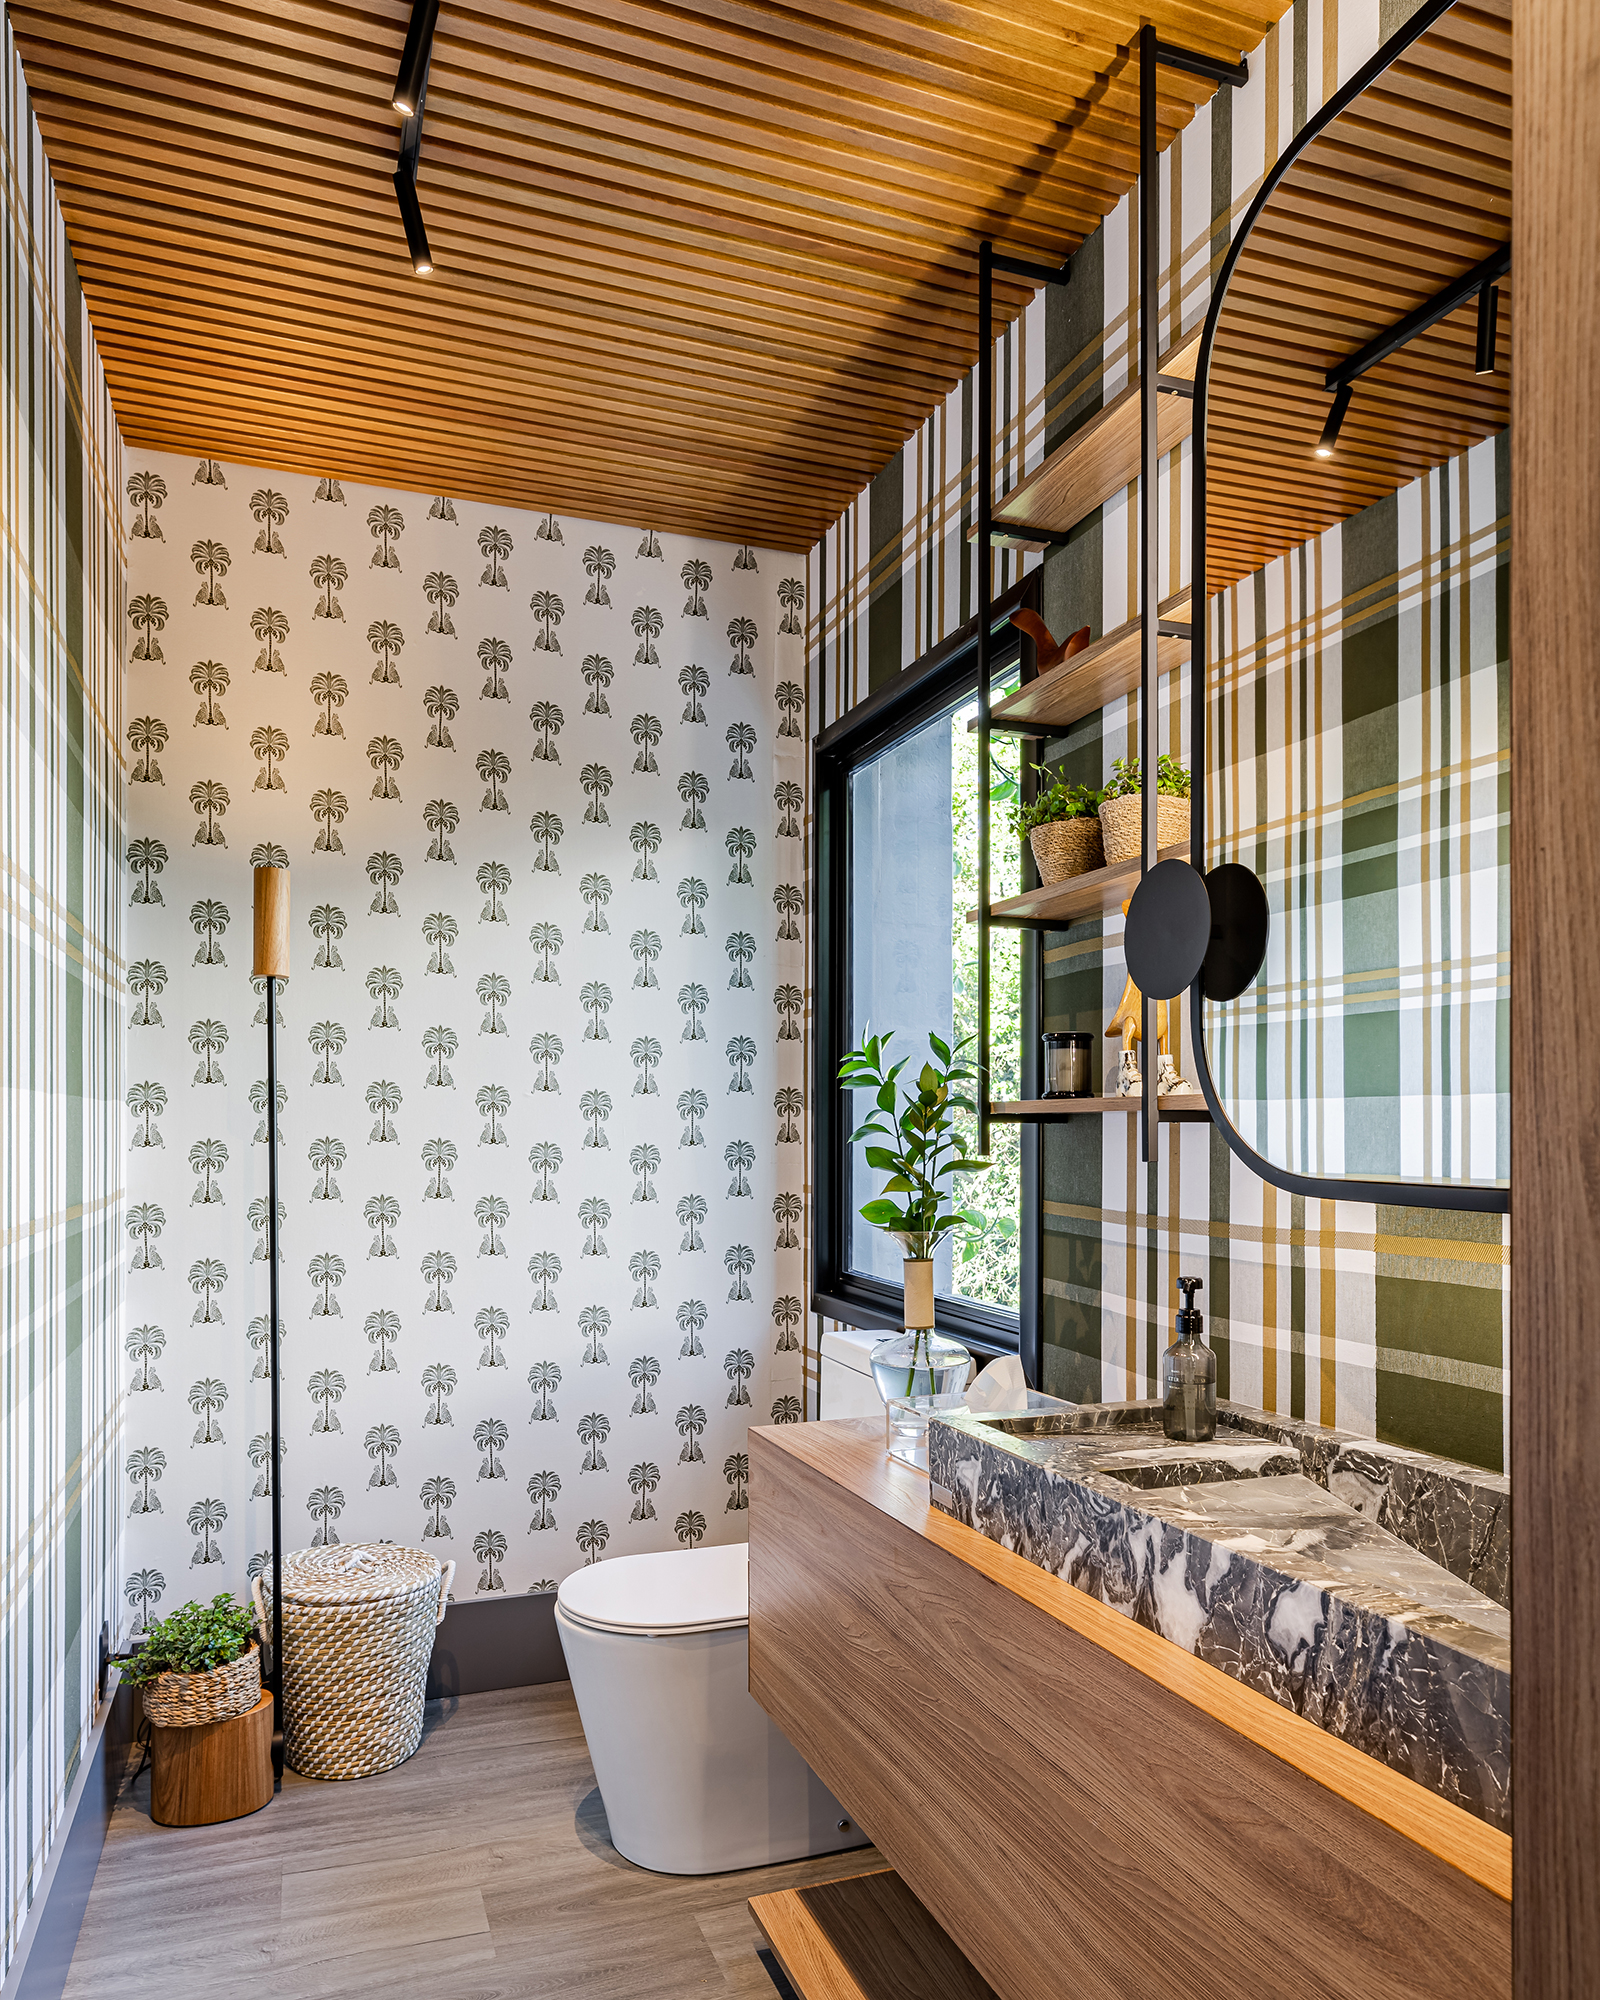 Escritório arquitetura sede cara casa campo Acanto Arquitetura decoração madeira banheiro lavabo espelho papel de parede